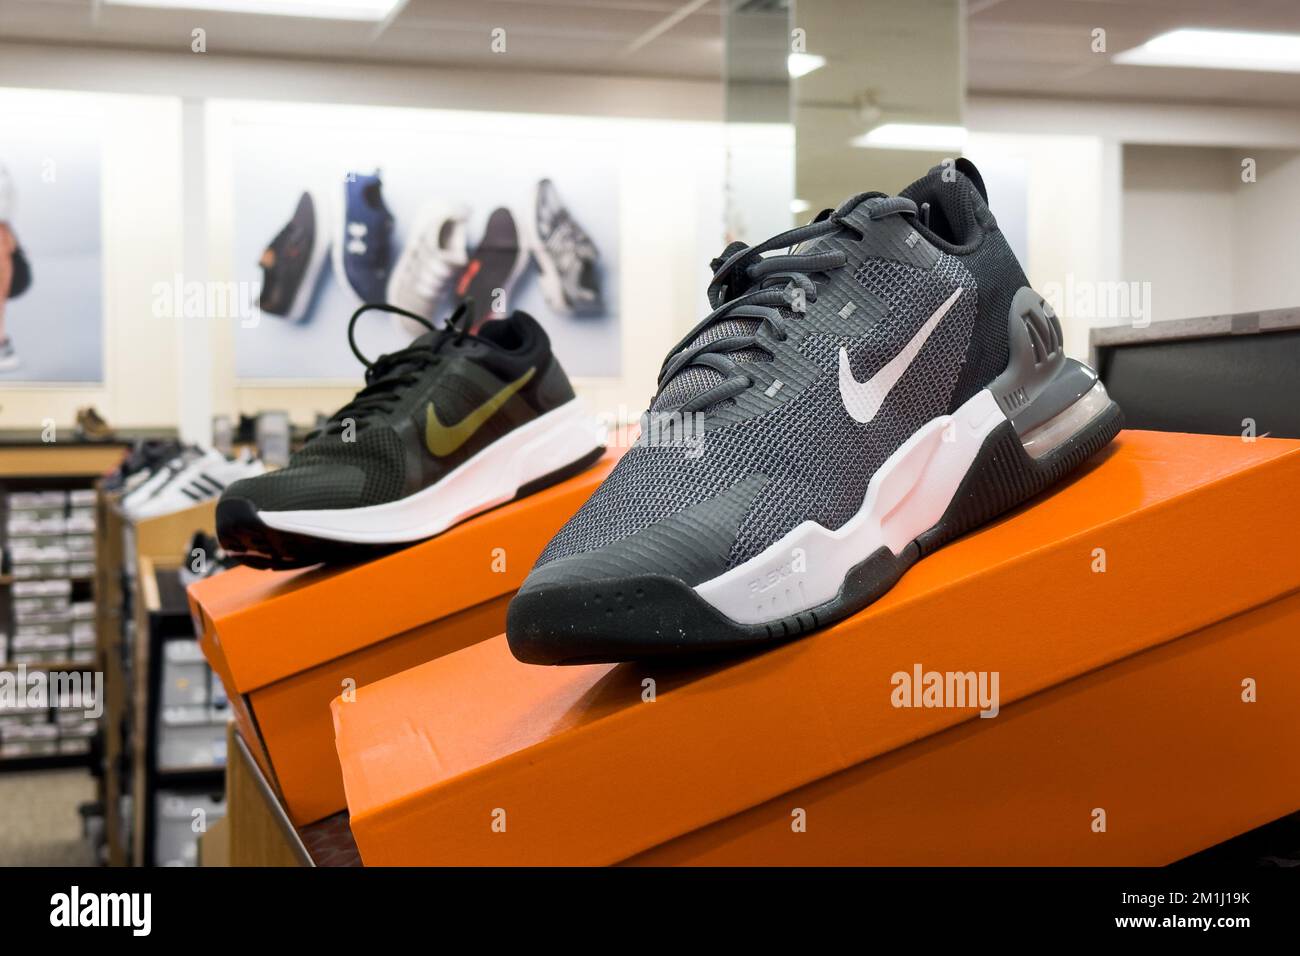 Nike Sportschuhe werden im Regal des Geschäfts ausgestellt Stockfoto